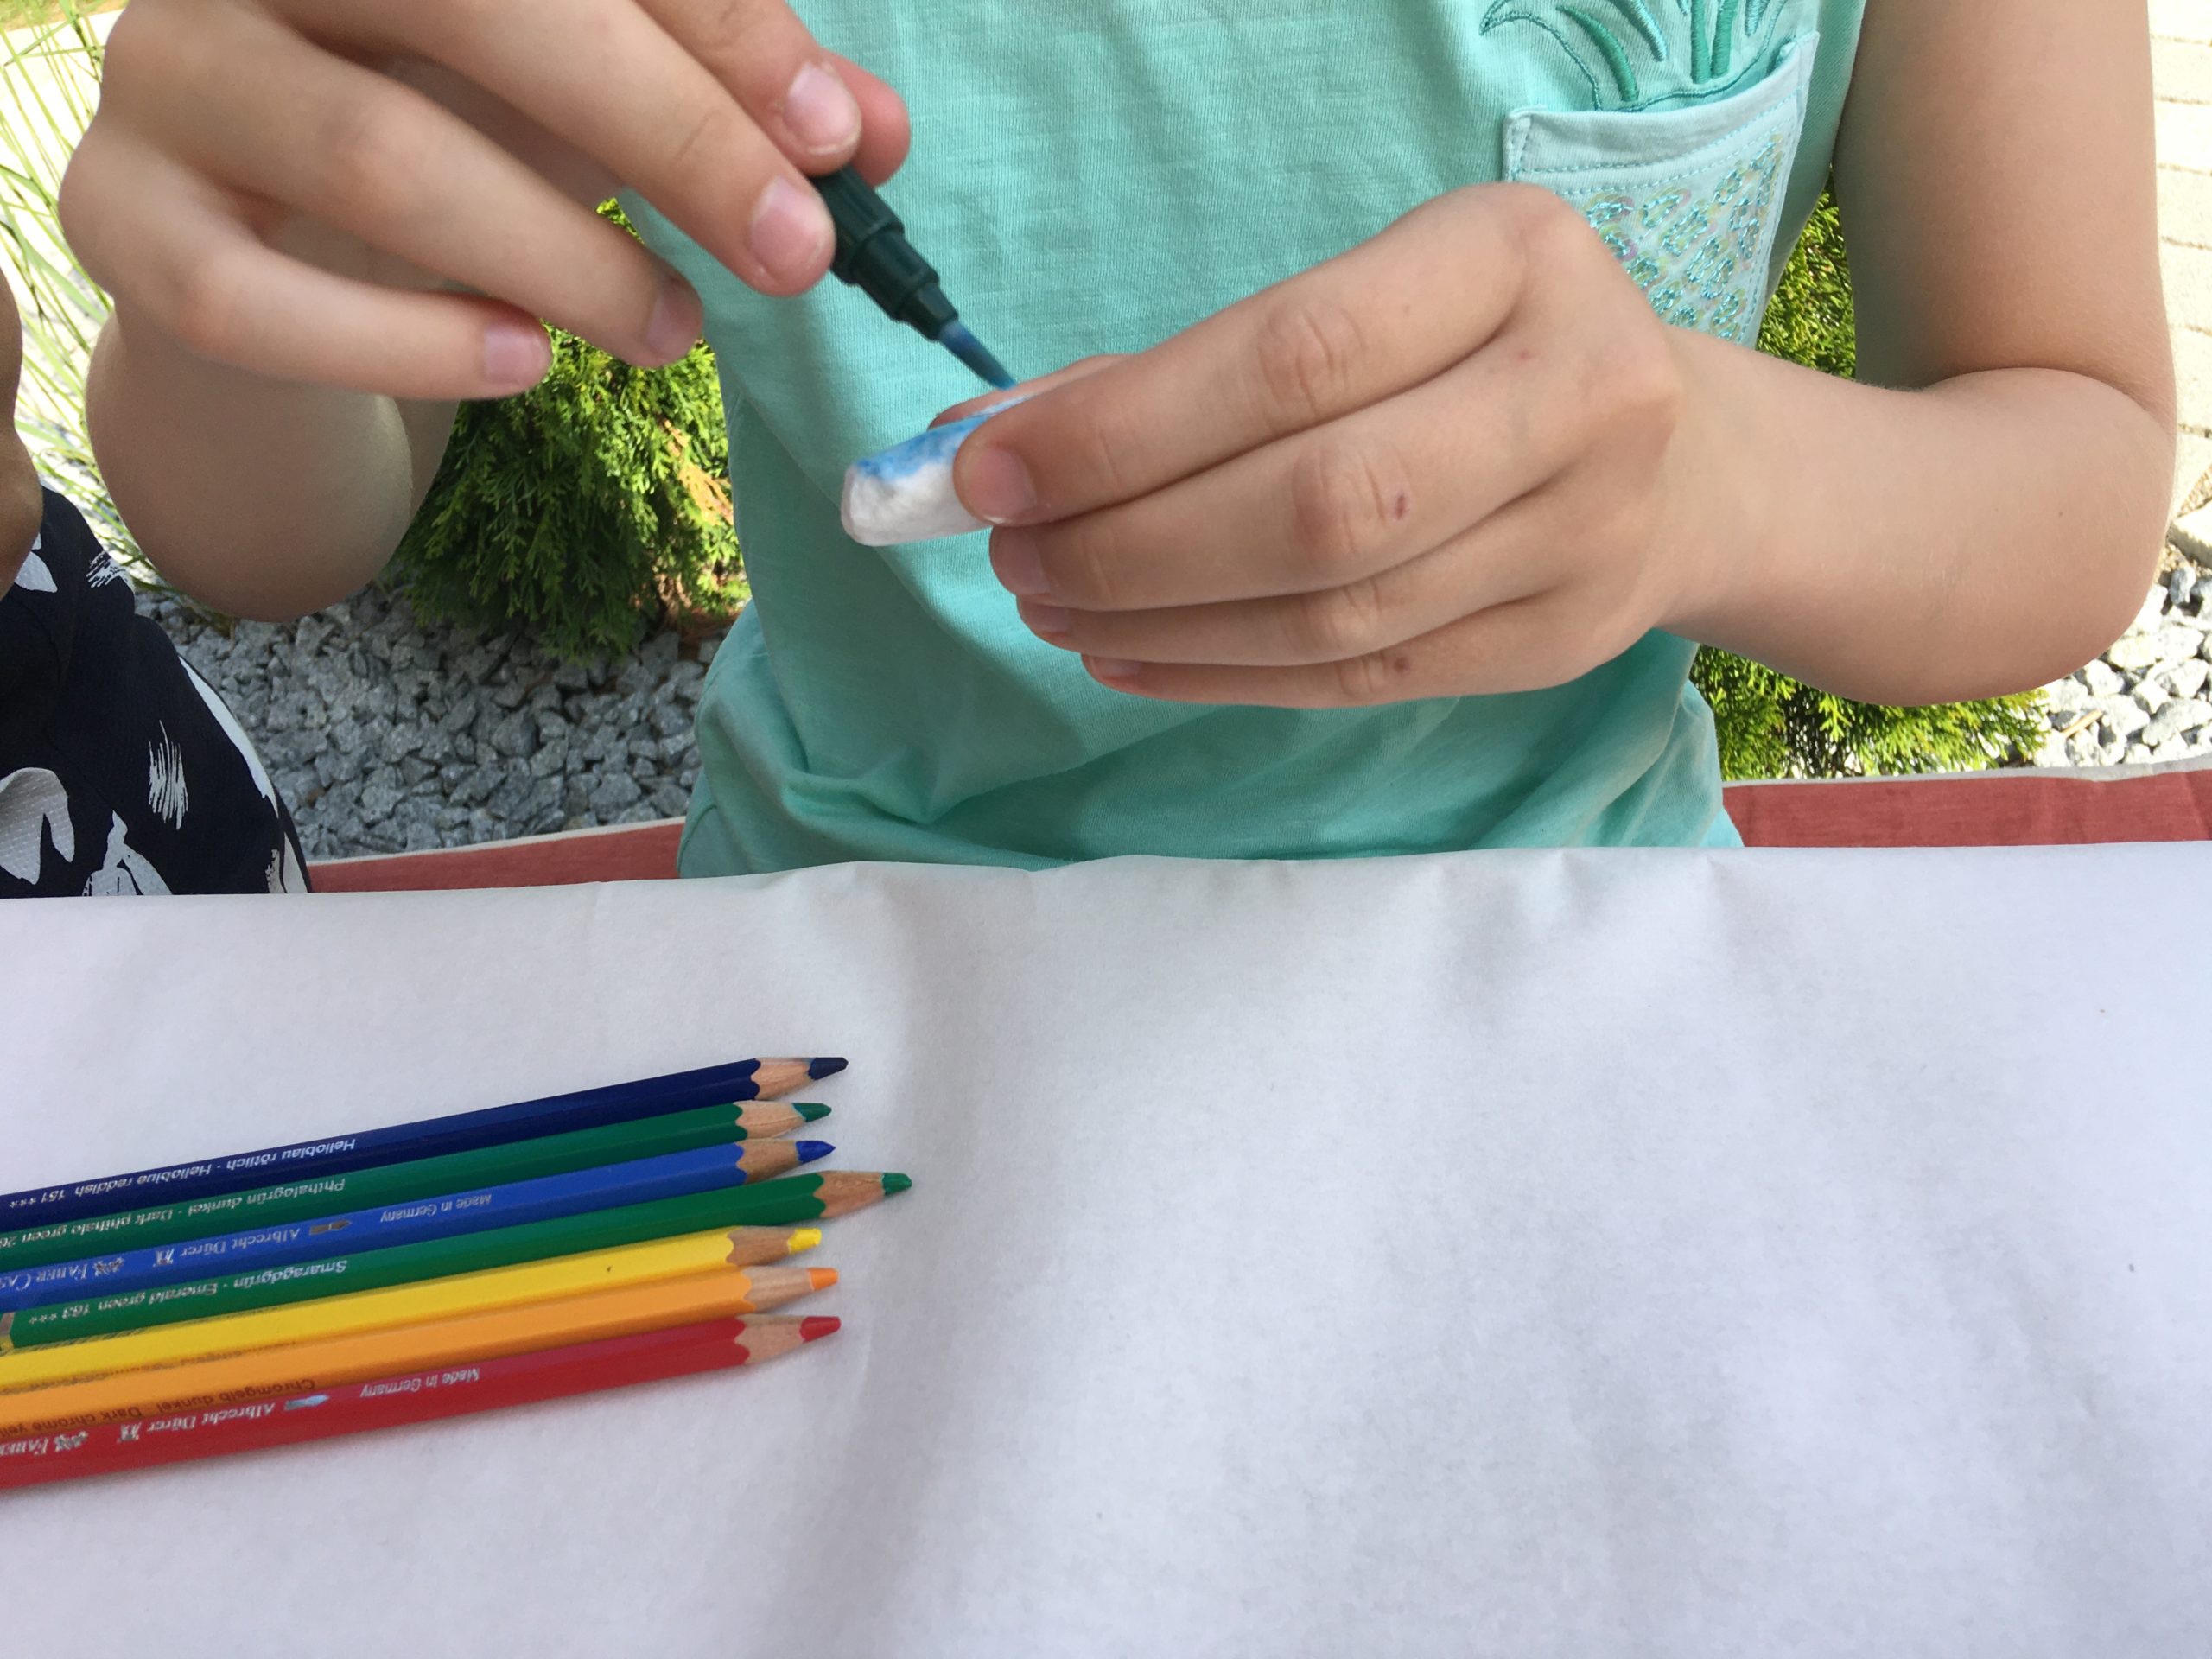 Bild zum Schritt 3 für das Bastel- und DIY-Abenteuer für Kinder: 'Wir haben Aquarellbuntstifte verwendet. Nach dem Malen können Farbverläufe mit...'